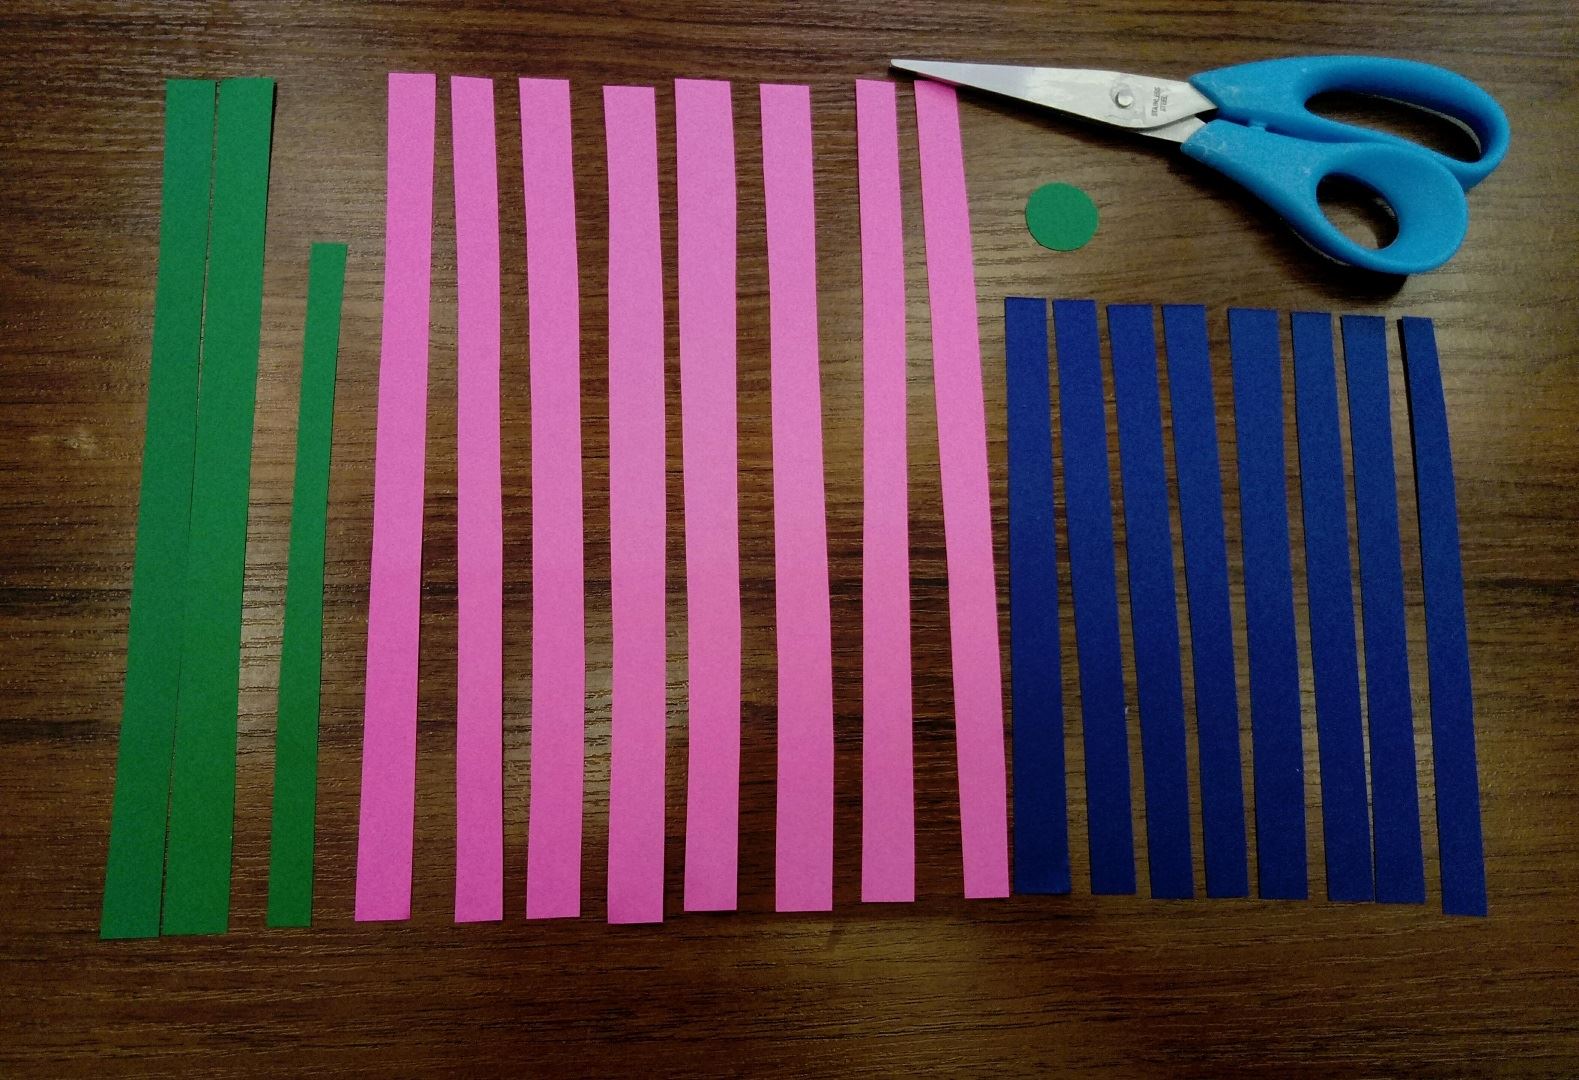 Для начала, очень простое задание, сделать множество полосок. Розовый лист мы разрезаем вдоль на 8 одинаковых полосок. Синюю же бумагу мы разрезаем по горизонтали, так же на 8 полосок. Теперь берём зелёную бумагу и вырезаем 2 длинные полоски, одну немного короче и 1 маленький кружочек. Когда всё сделано, можем продолжать!